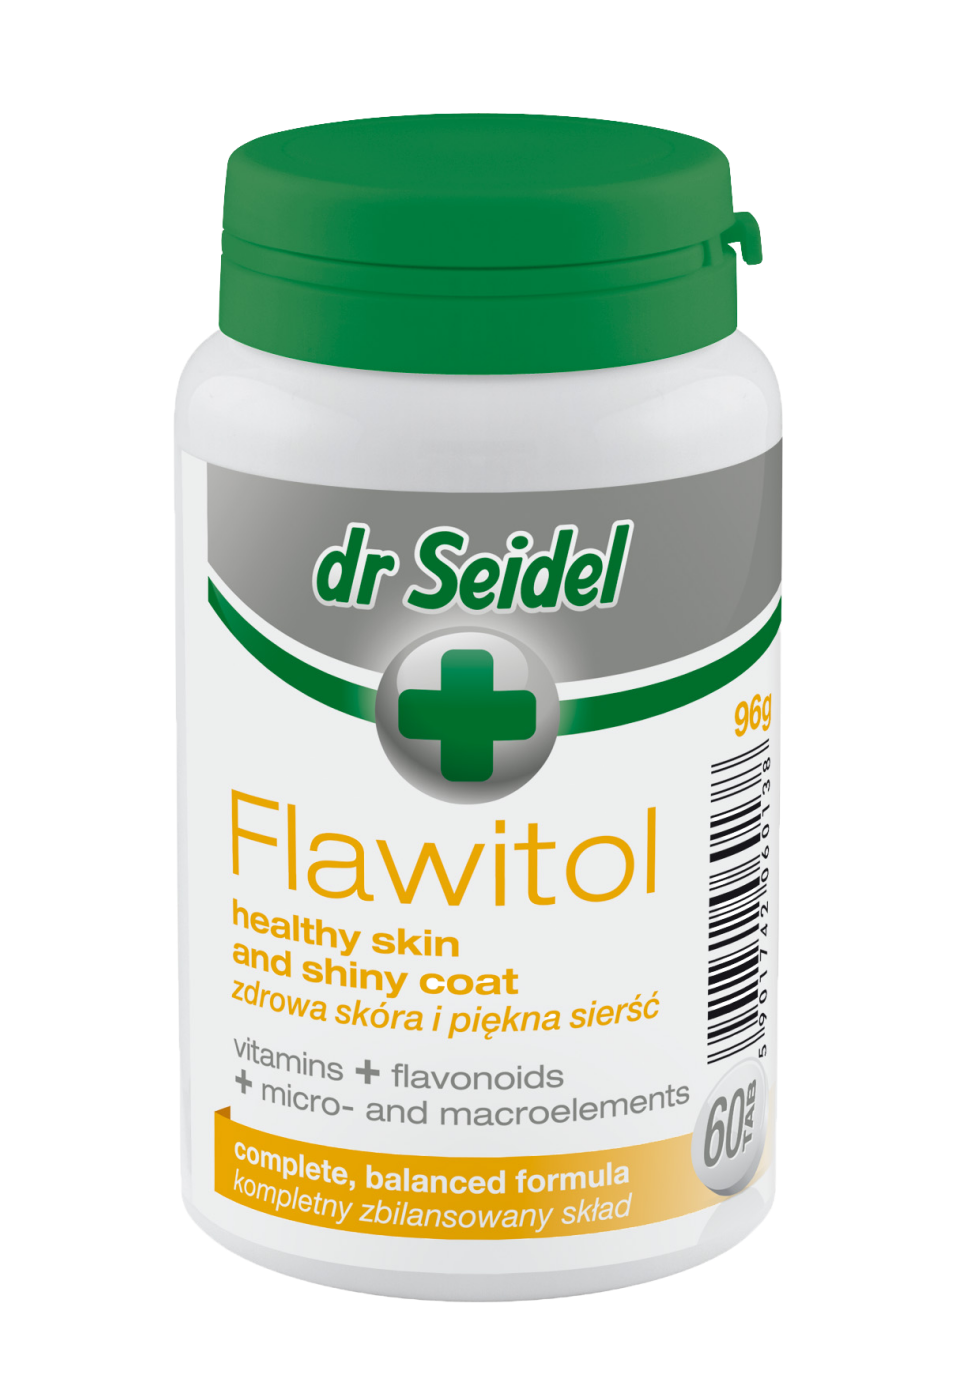  Dr. Seidel Flawitol здоровая кожа и красивая шерсть. Таблетки